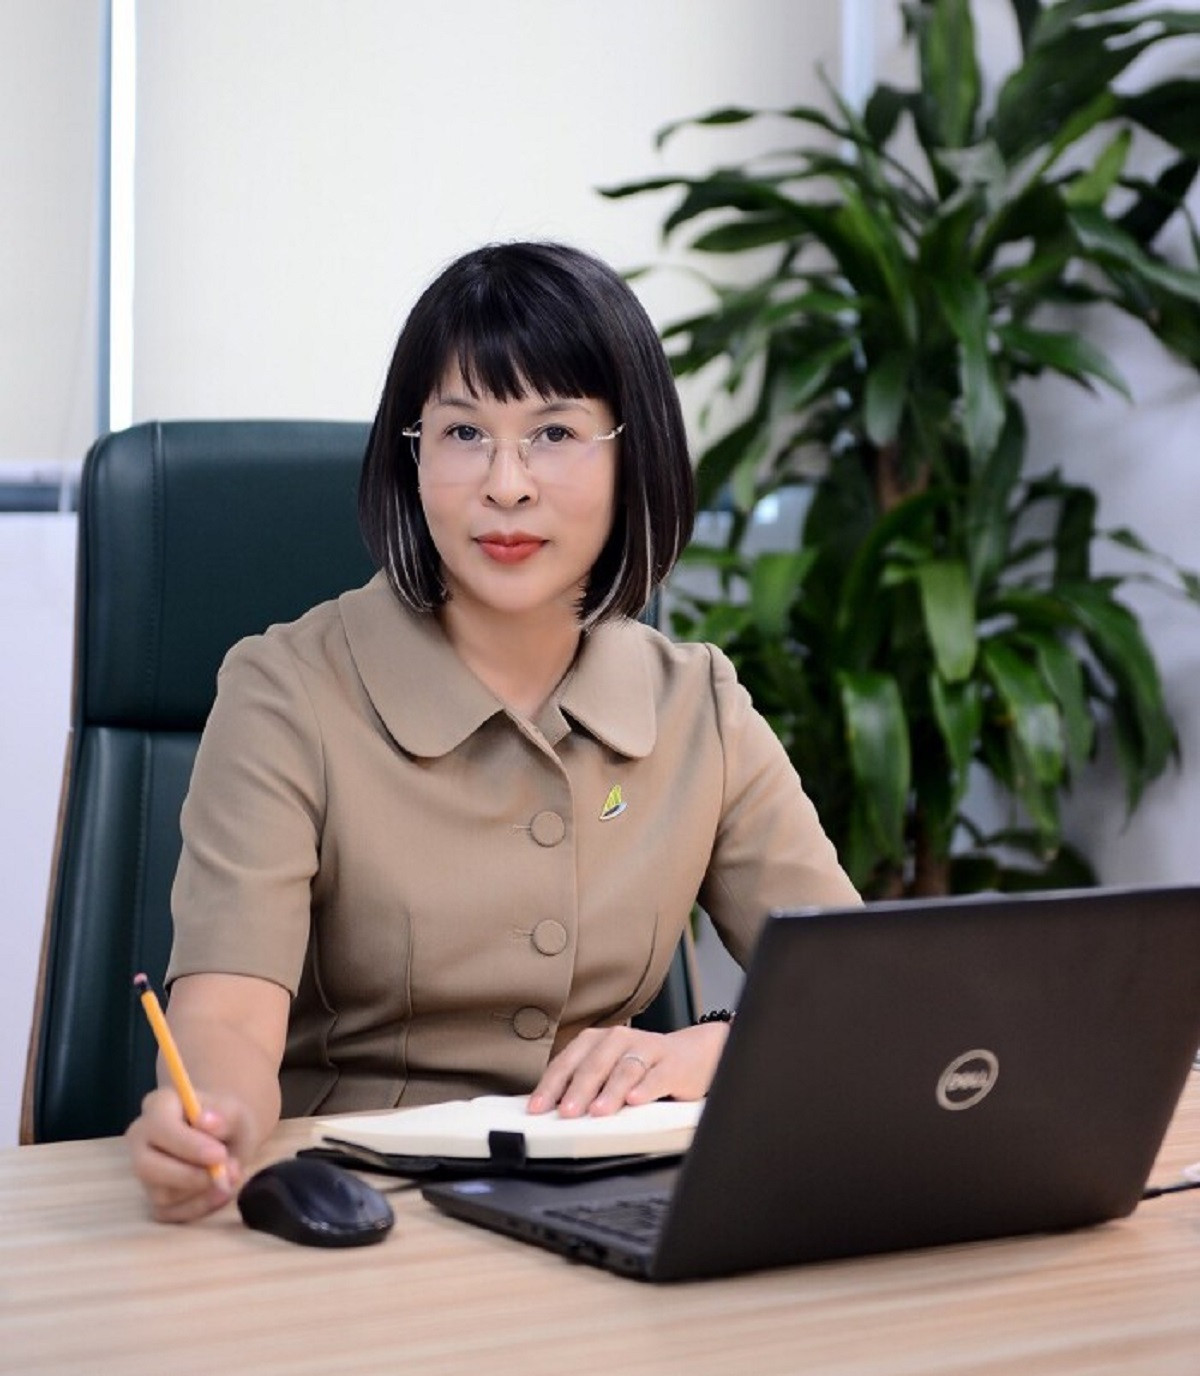 Bà Lê Thị Trúc Quỳnh, thành viên mới trong HĐQT Bamboo Airways.